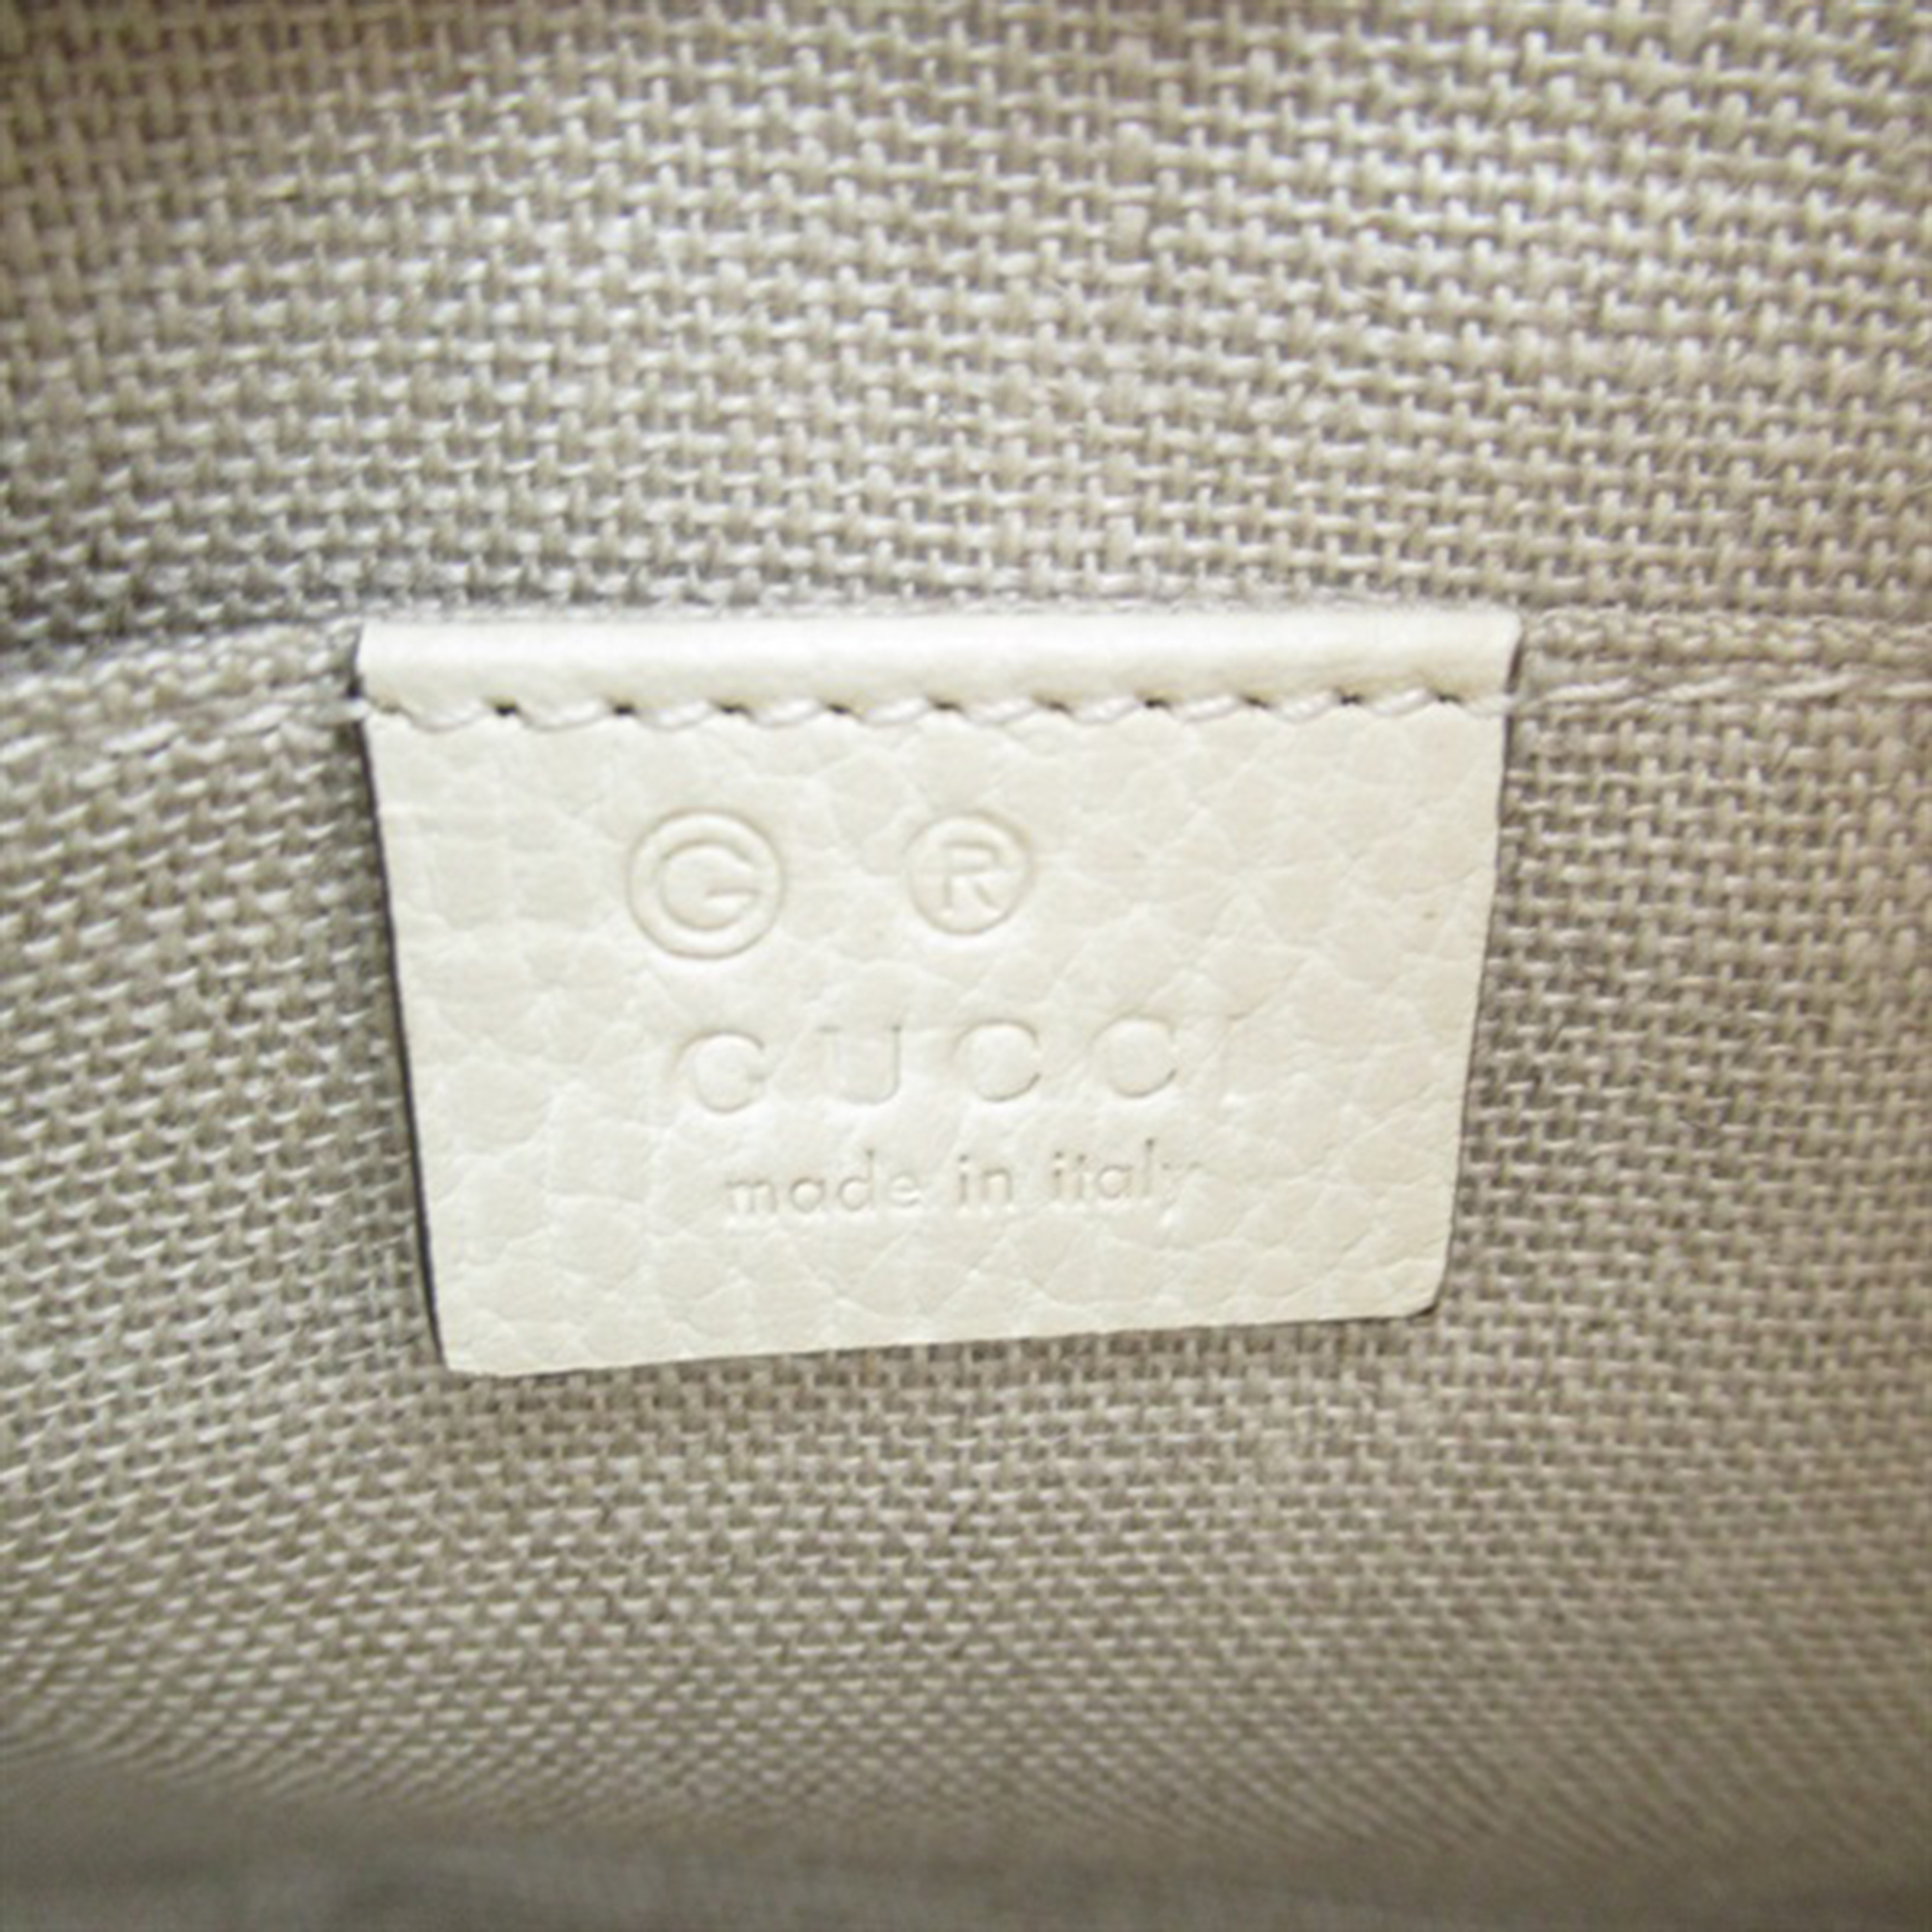 Gucci Beige Animal Skin GG Canvas Bree Crossbody Bag